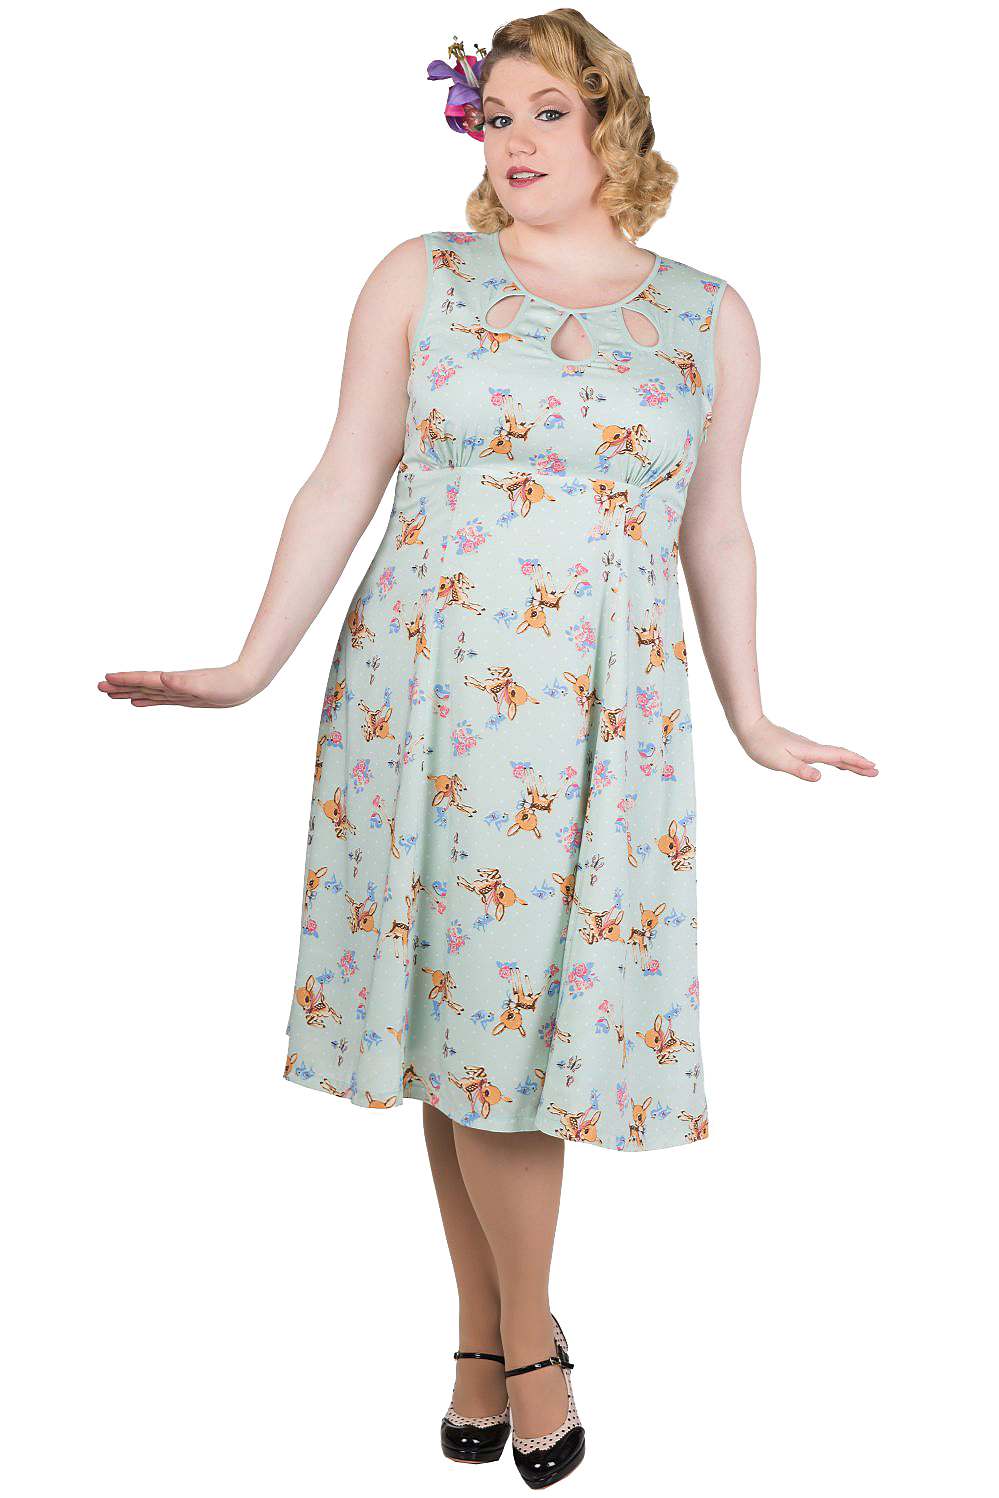 Banned Whimsical Bambi Dress | 40s Retro Disney Inspired Dress | Visit ...